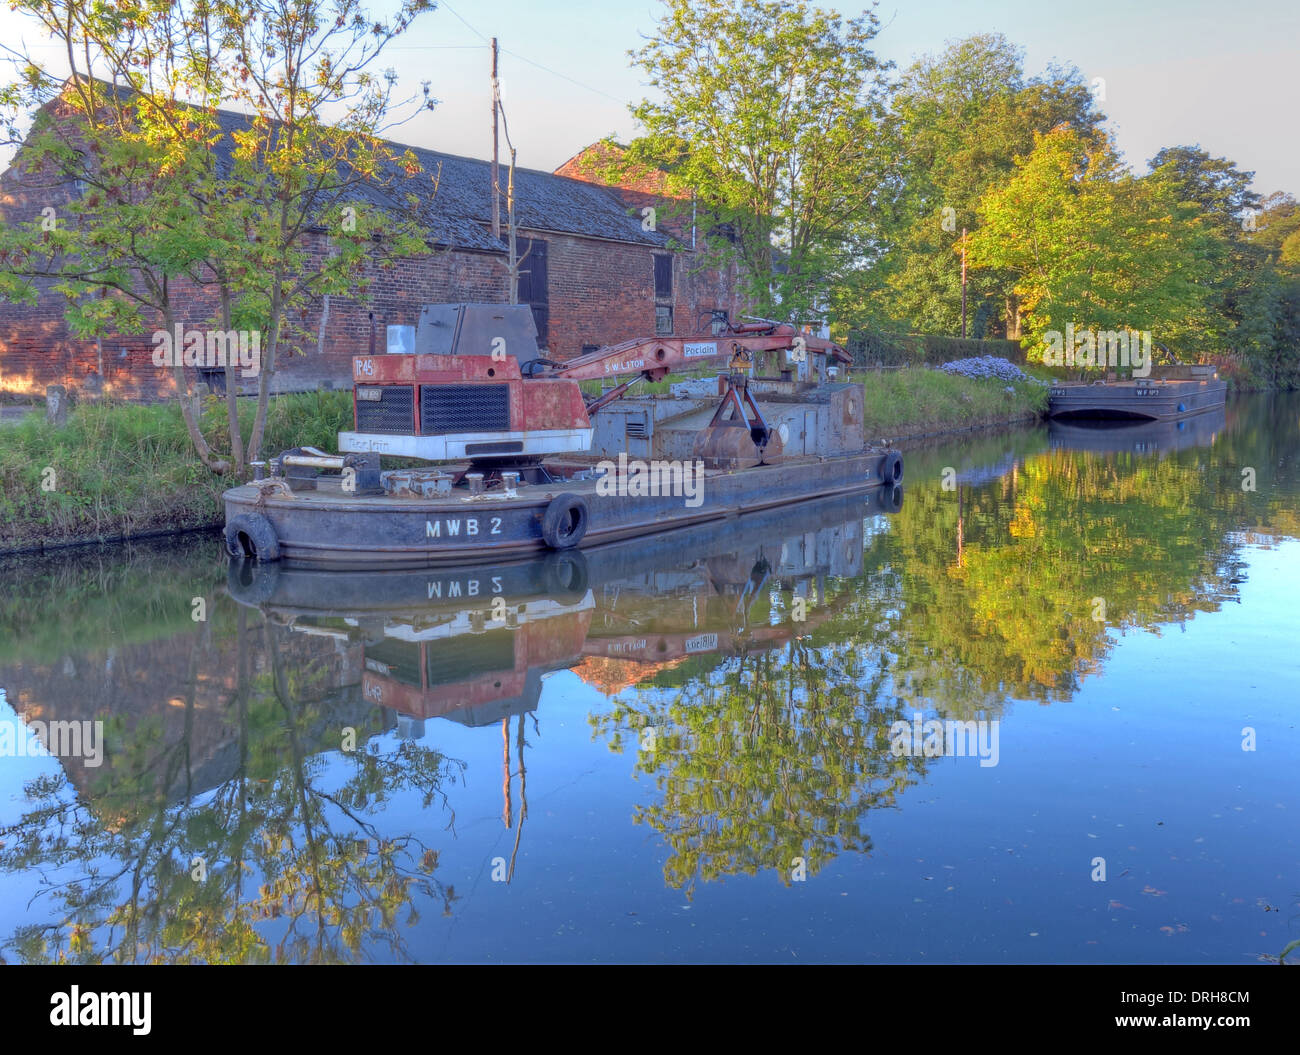 MWB2 genietete Stahl Kran Kahn bei der Arbeit auf dem Bridgewater-Kanal, in der Nähe von Grappenhall, Cheshire, UK Stockfoto